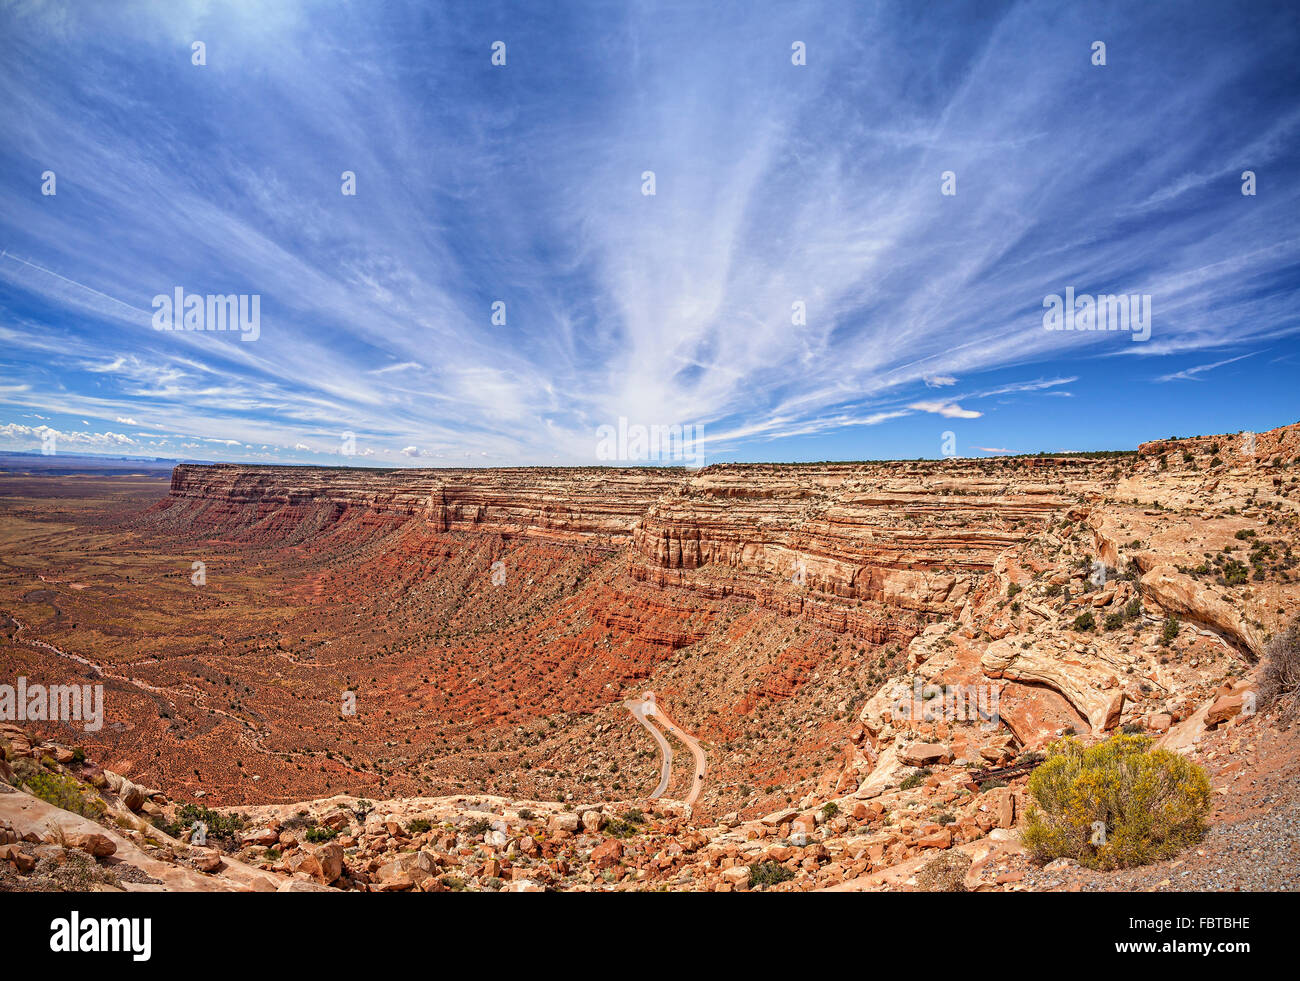 Utah immagini e fotografie stock ad alta risoluzione - Alamy